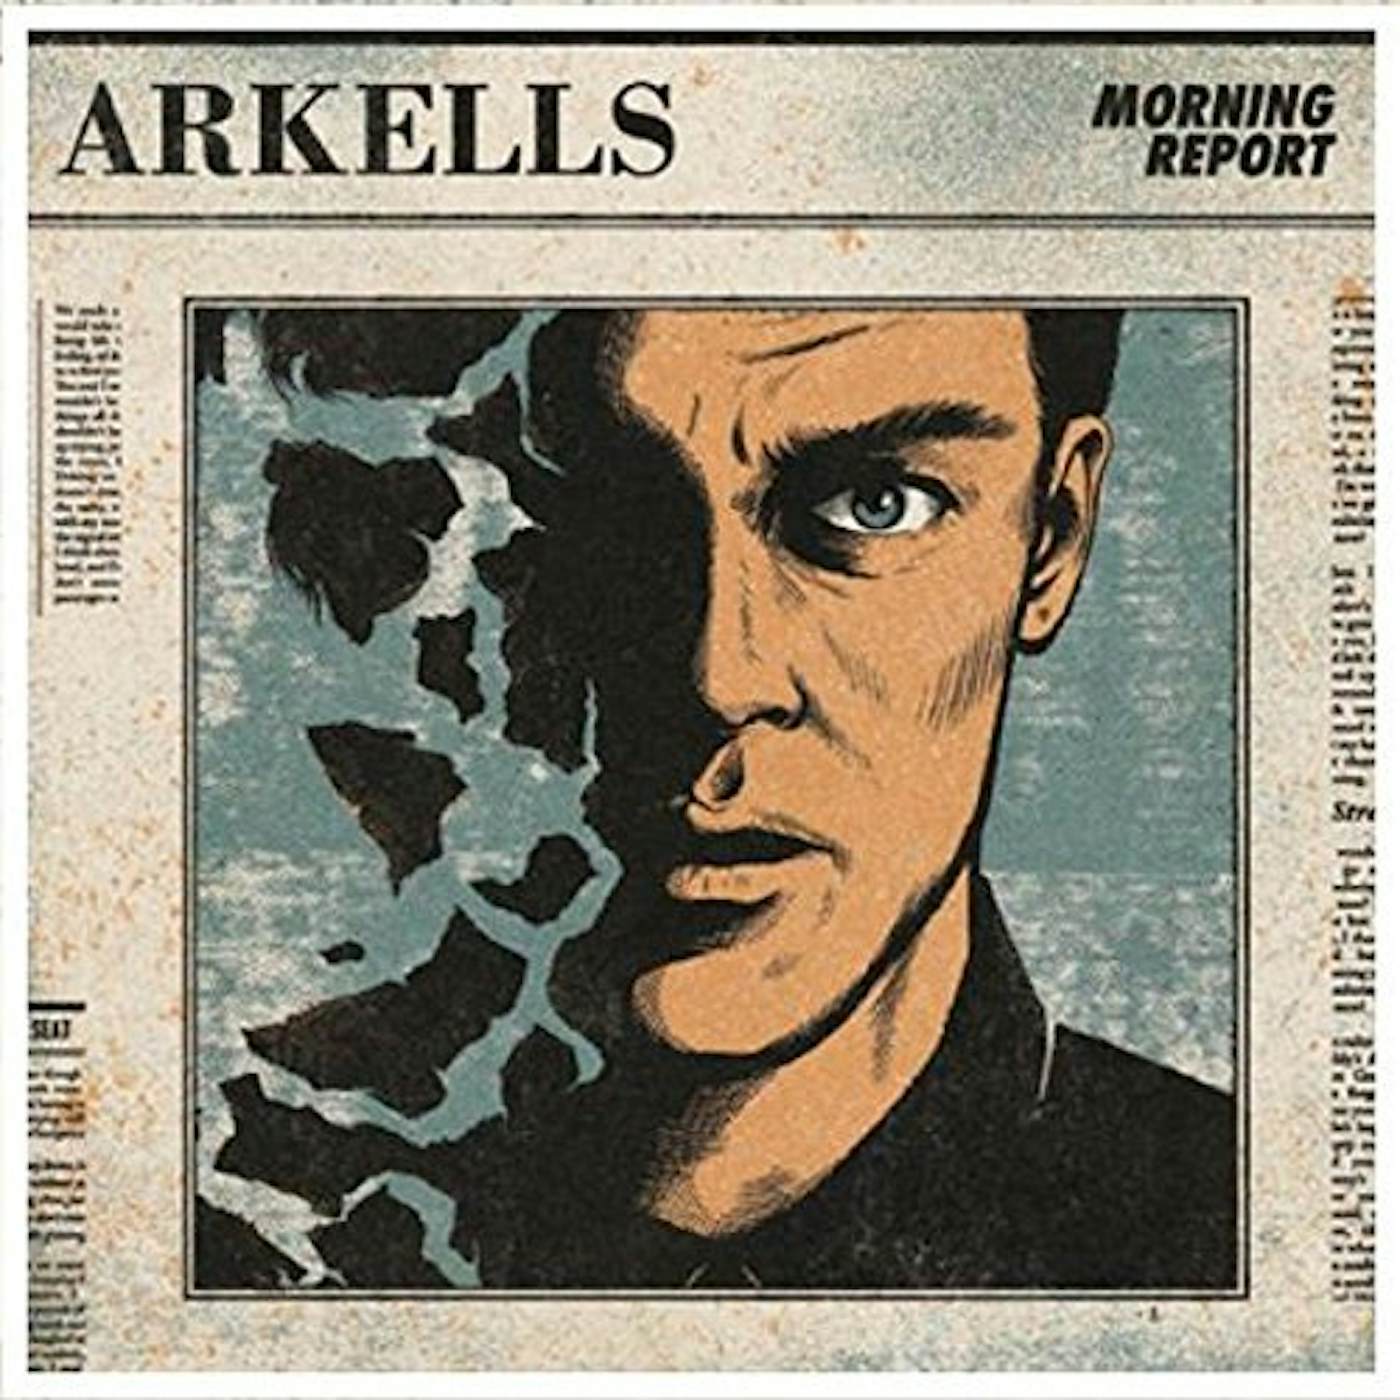 Arkells Morning Report Vinyl Record